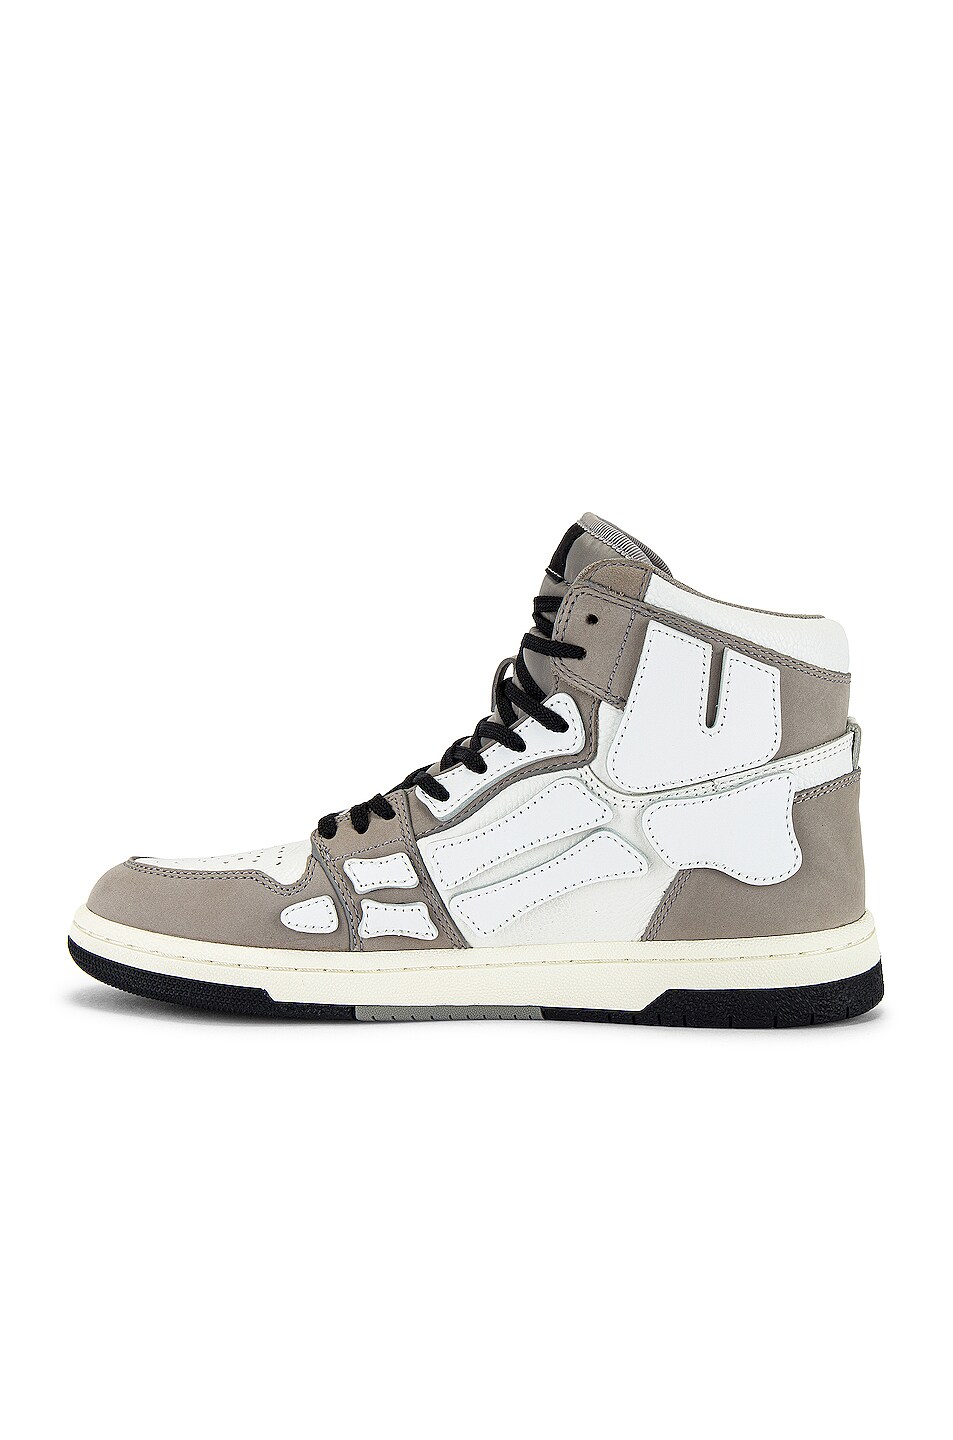 Amiri Skel Hi-Top Sneakers in Grey & White | FWRD